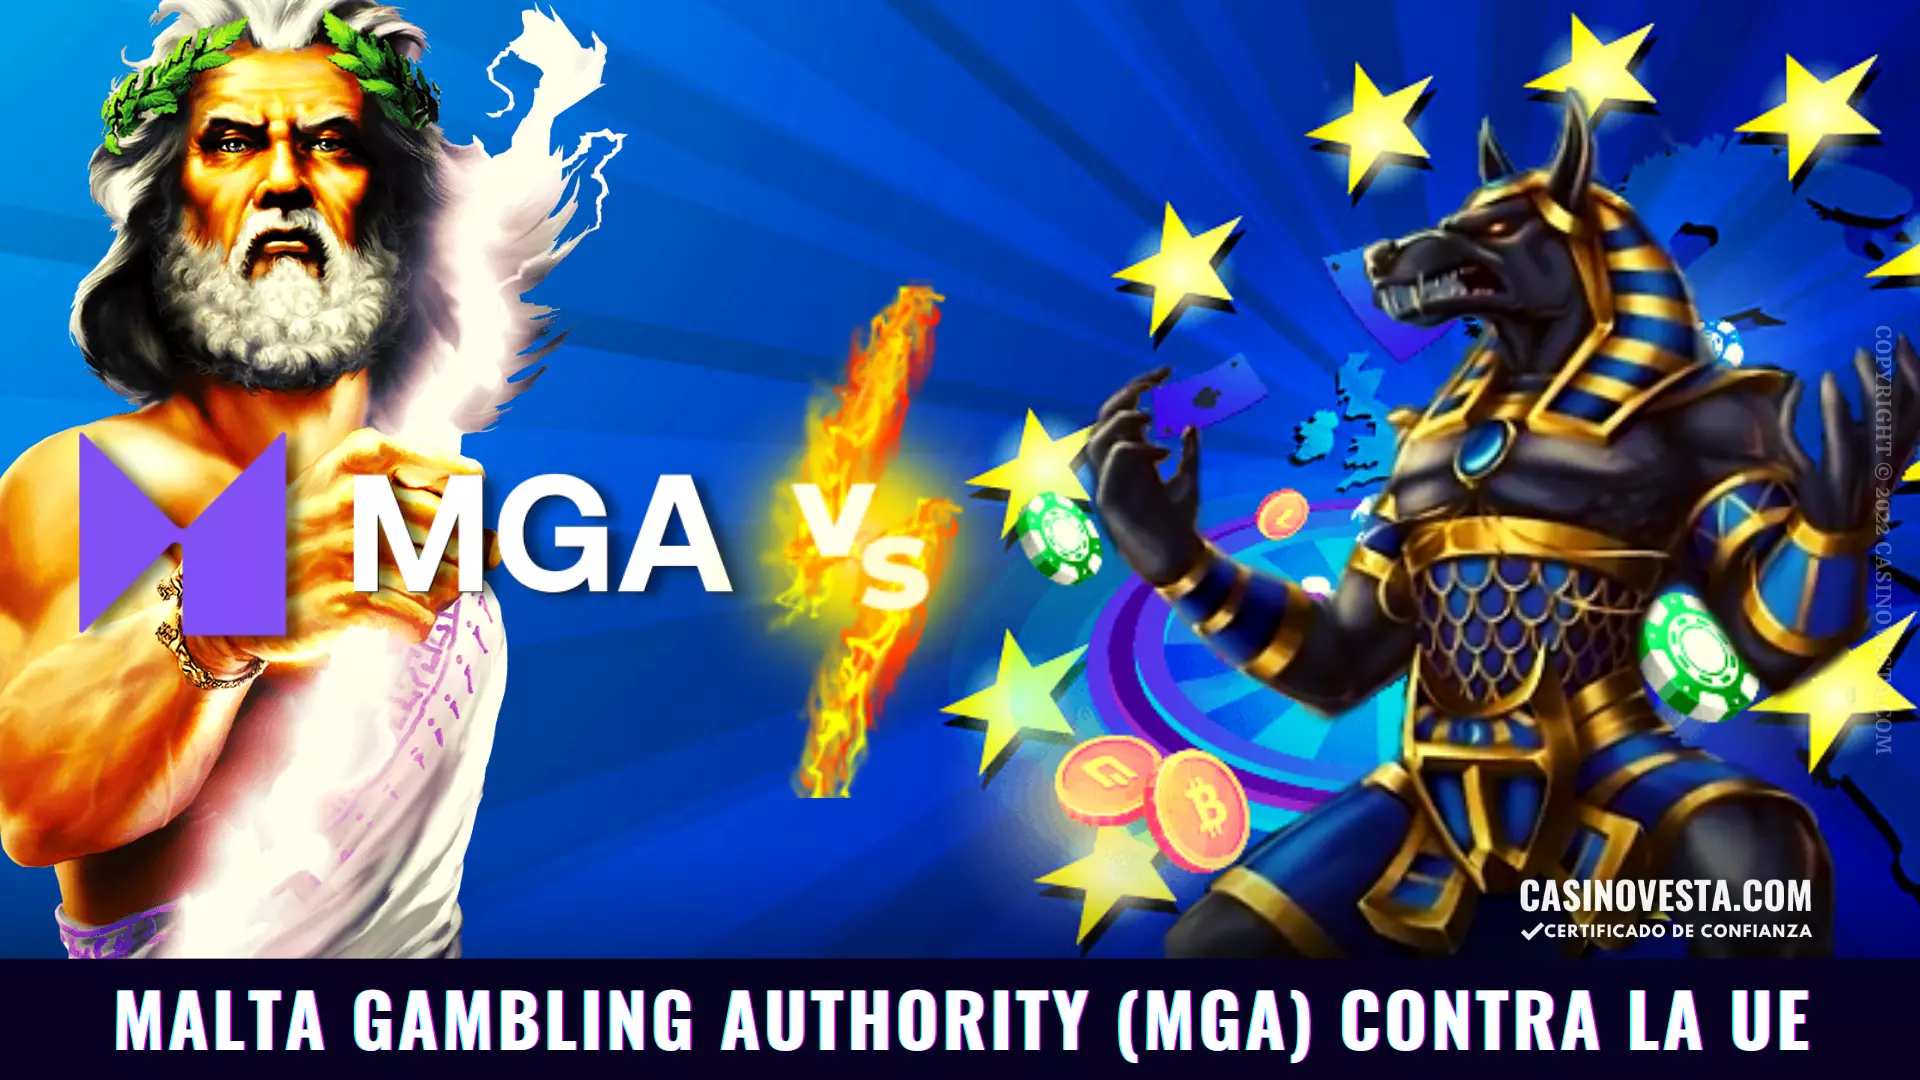 Se ha aprobado la Ley 55, que permitirá a los casinos online con licencia MGA aceptar jugadores de la Unión Europea